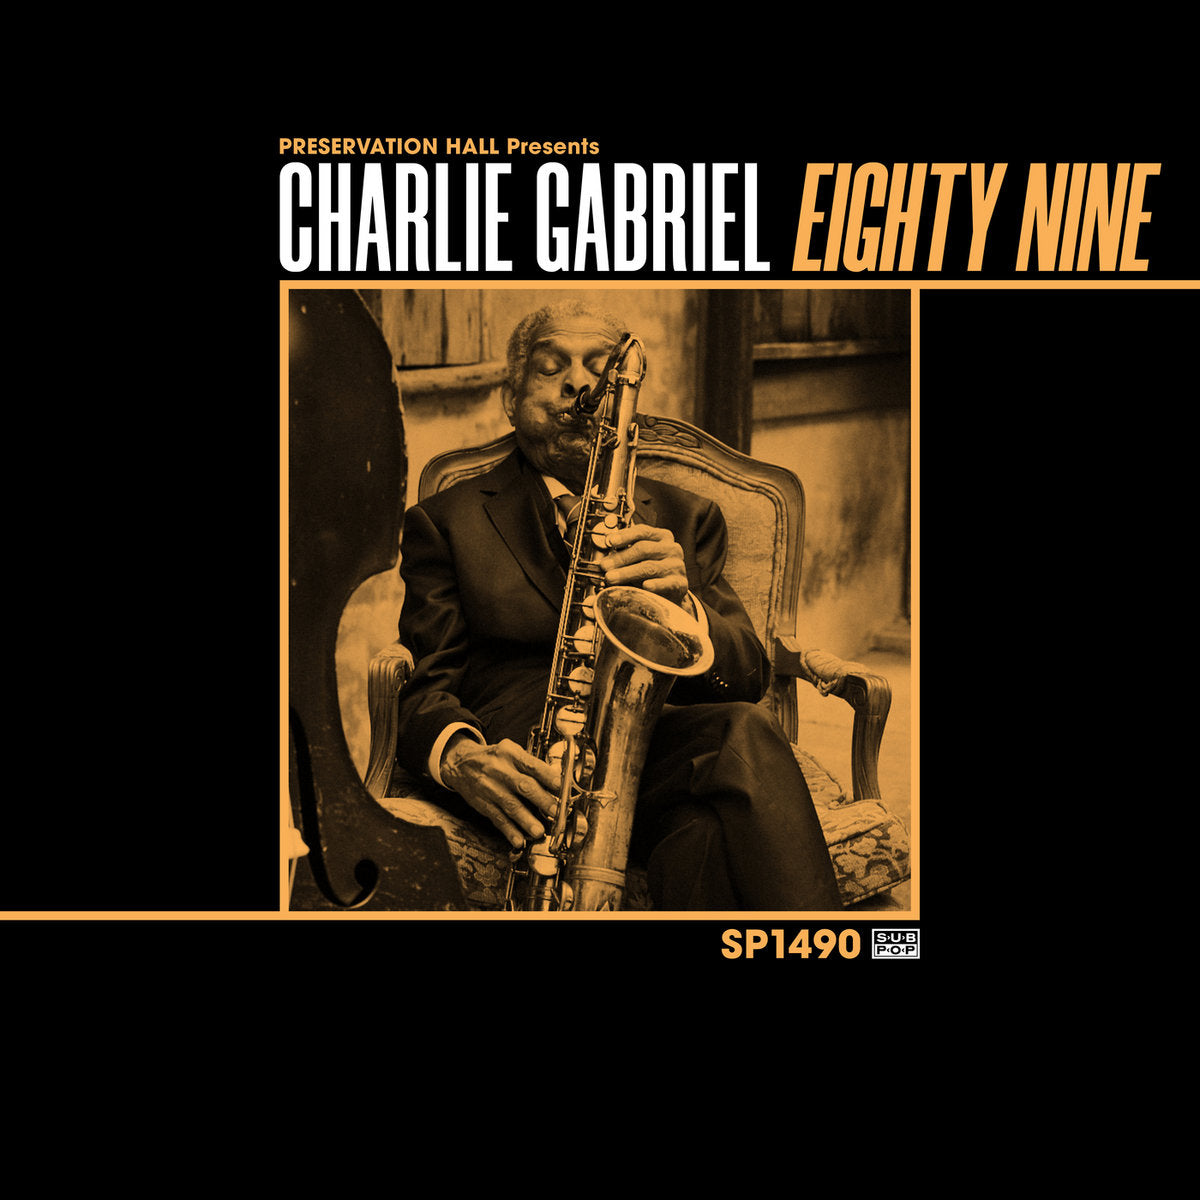 Gabriel, Charlie: 89 (Coloured Vinyl LP)